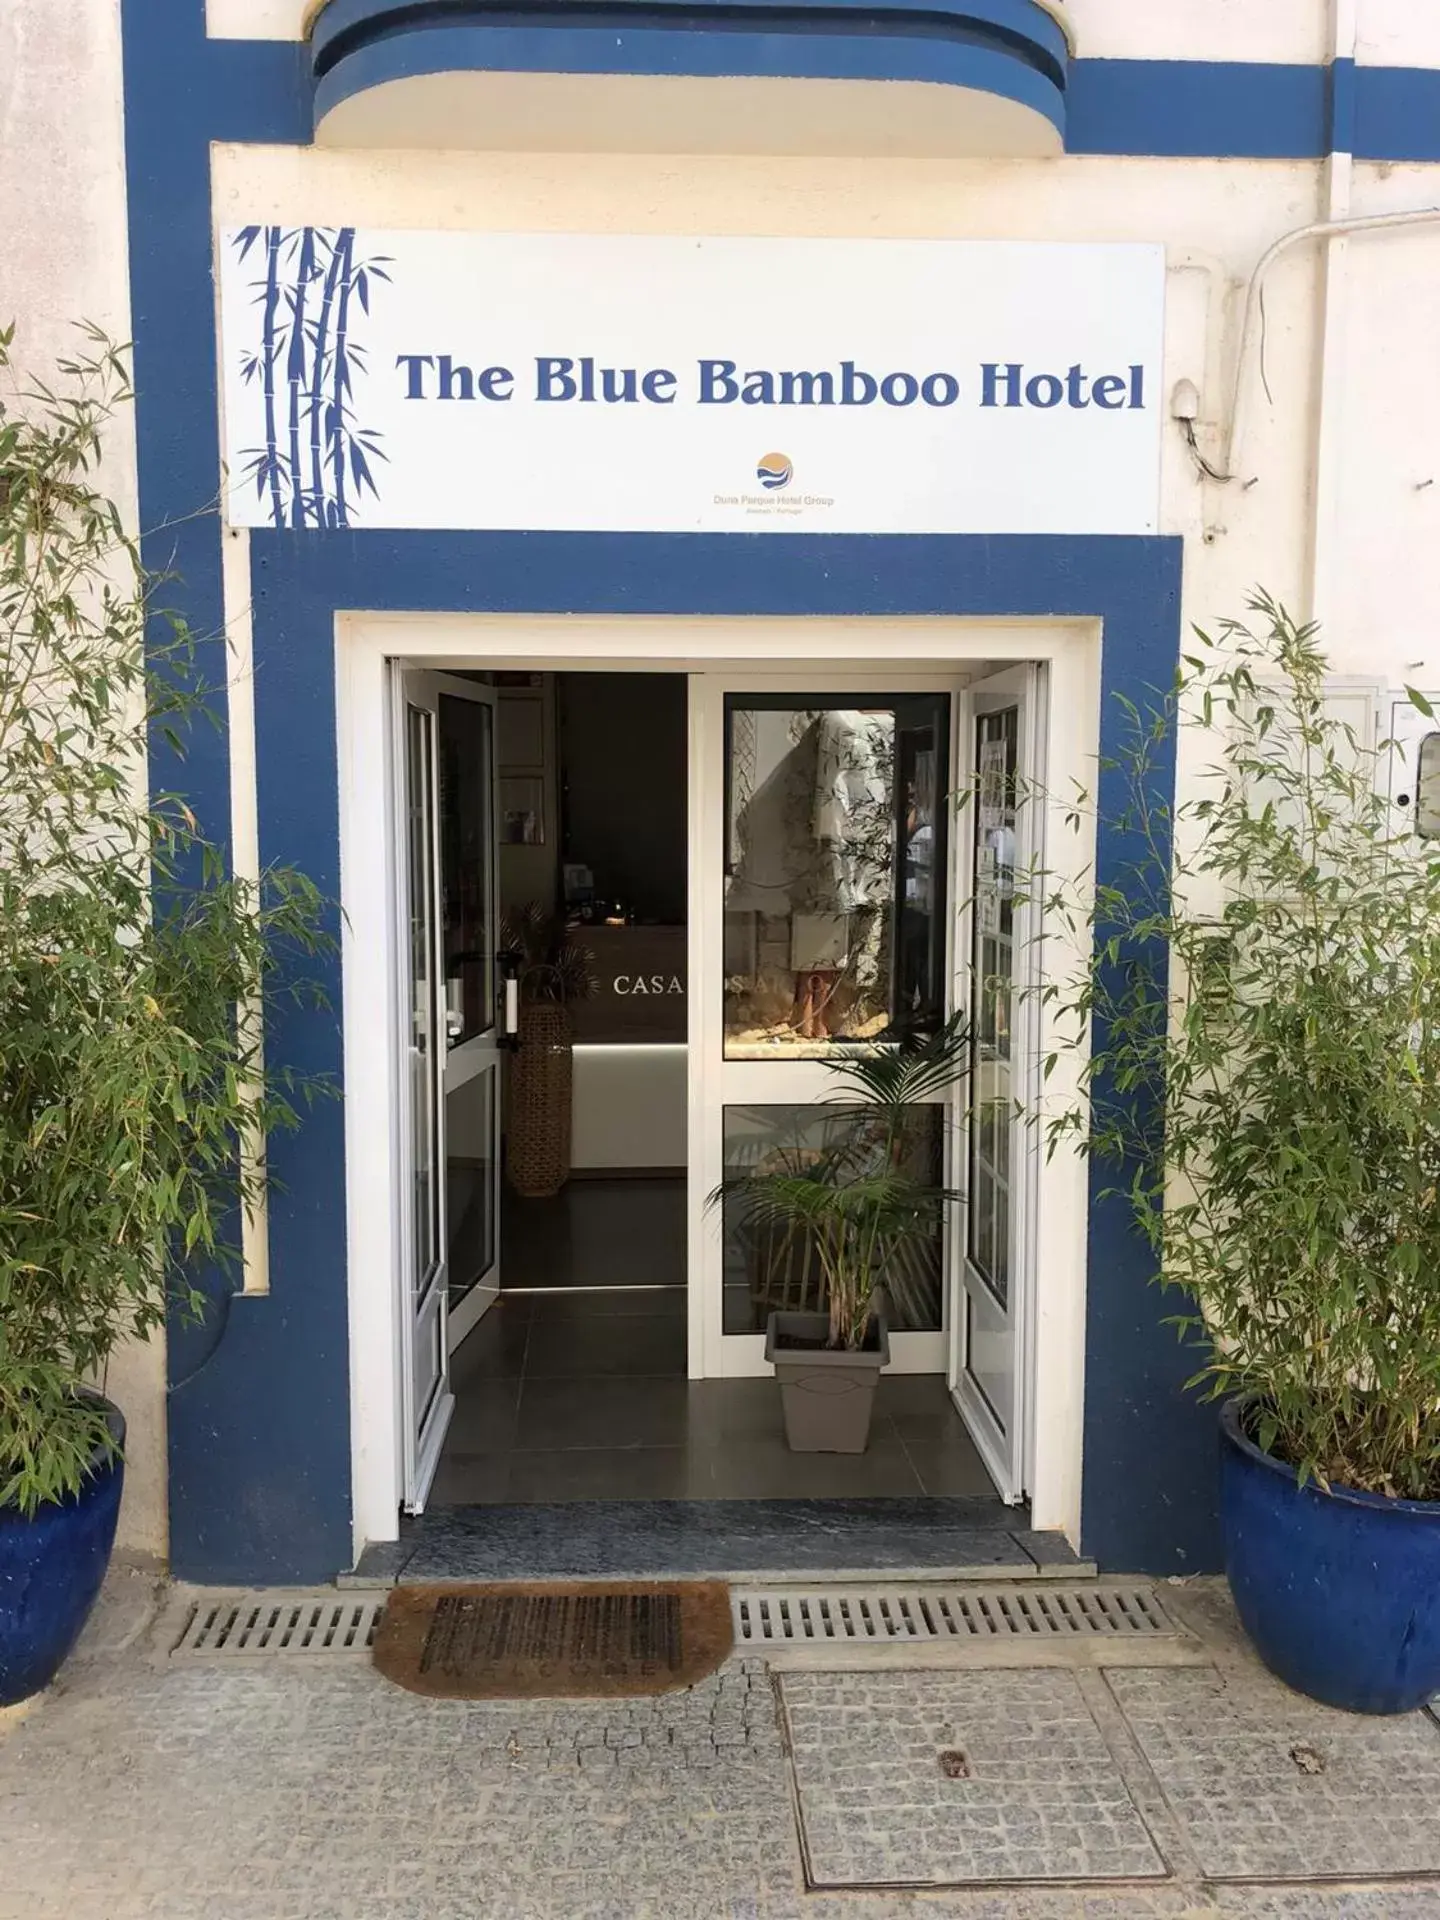 Facade/entrance in The Blue Bamboo Hotel - Duna Parque Group